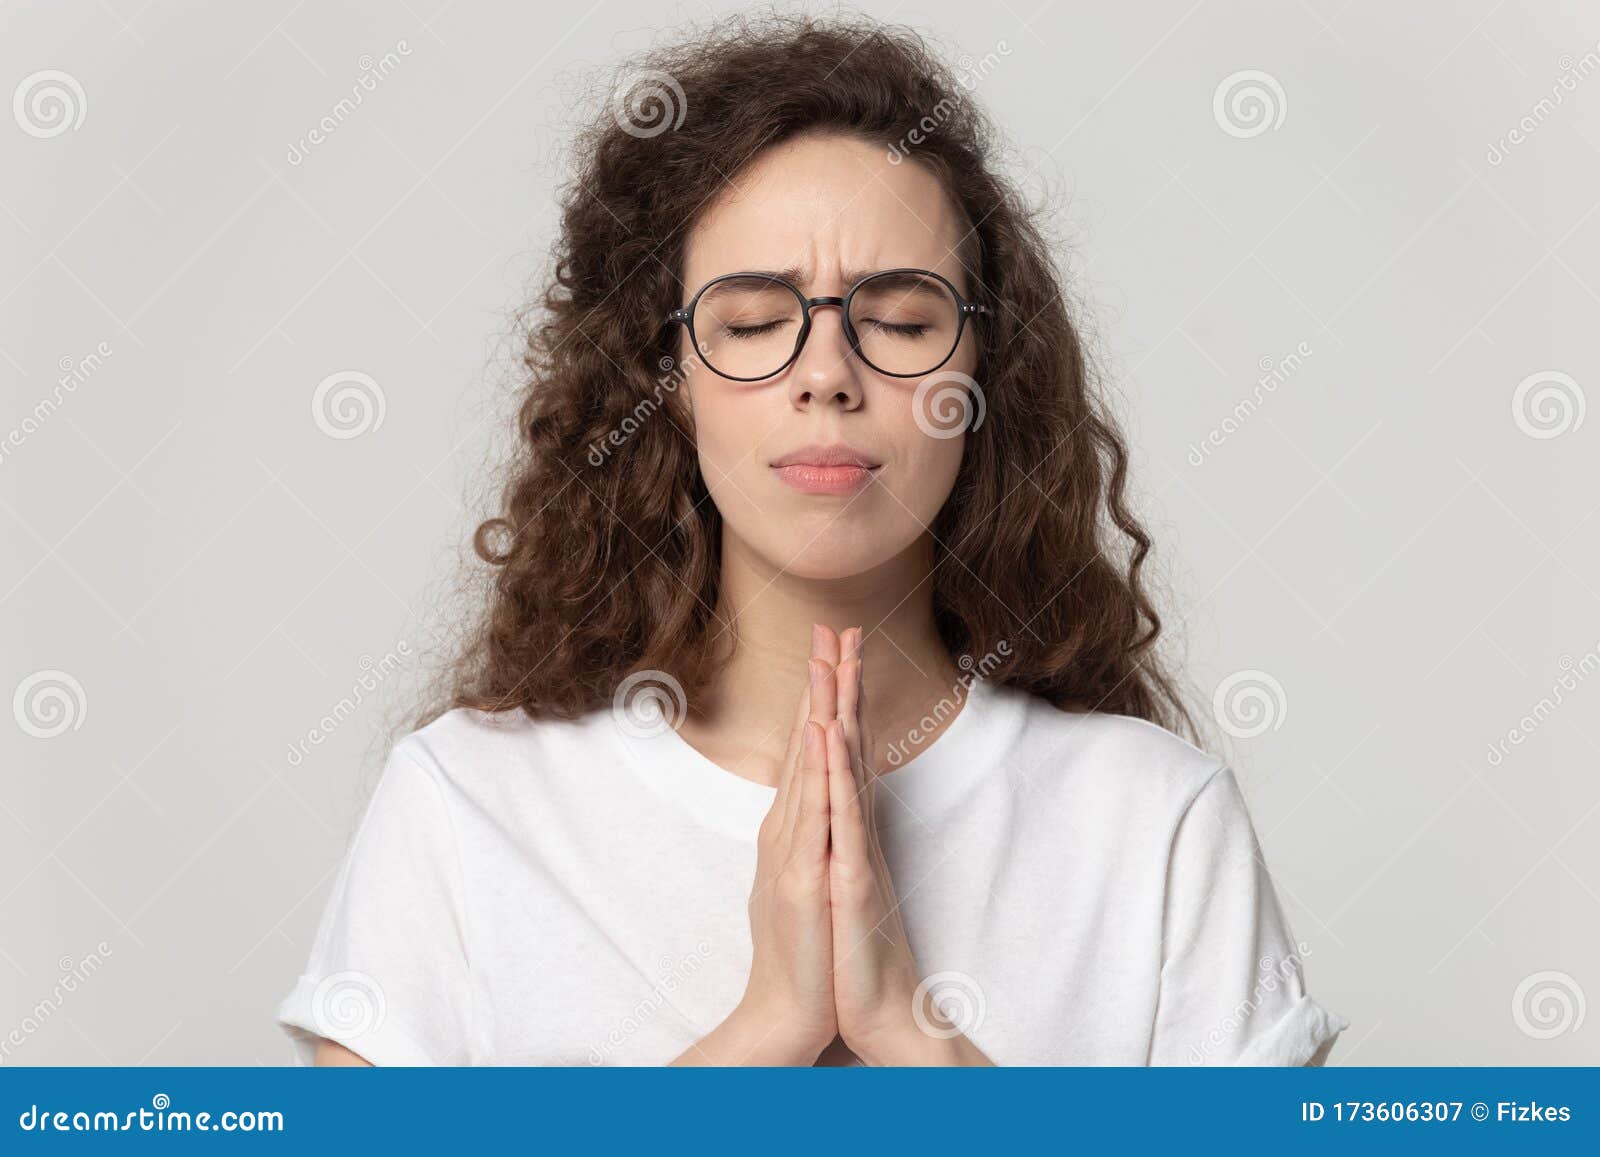 双手合十祈祷的美女图片素材-编号27715900-图行天下